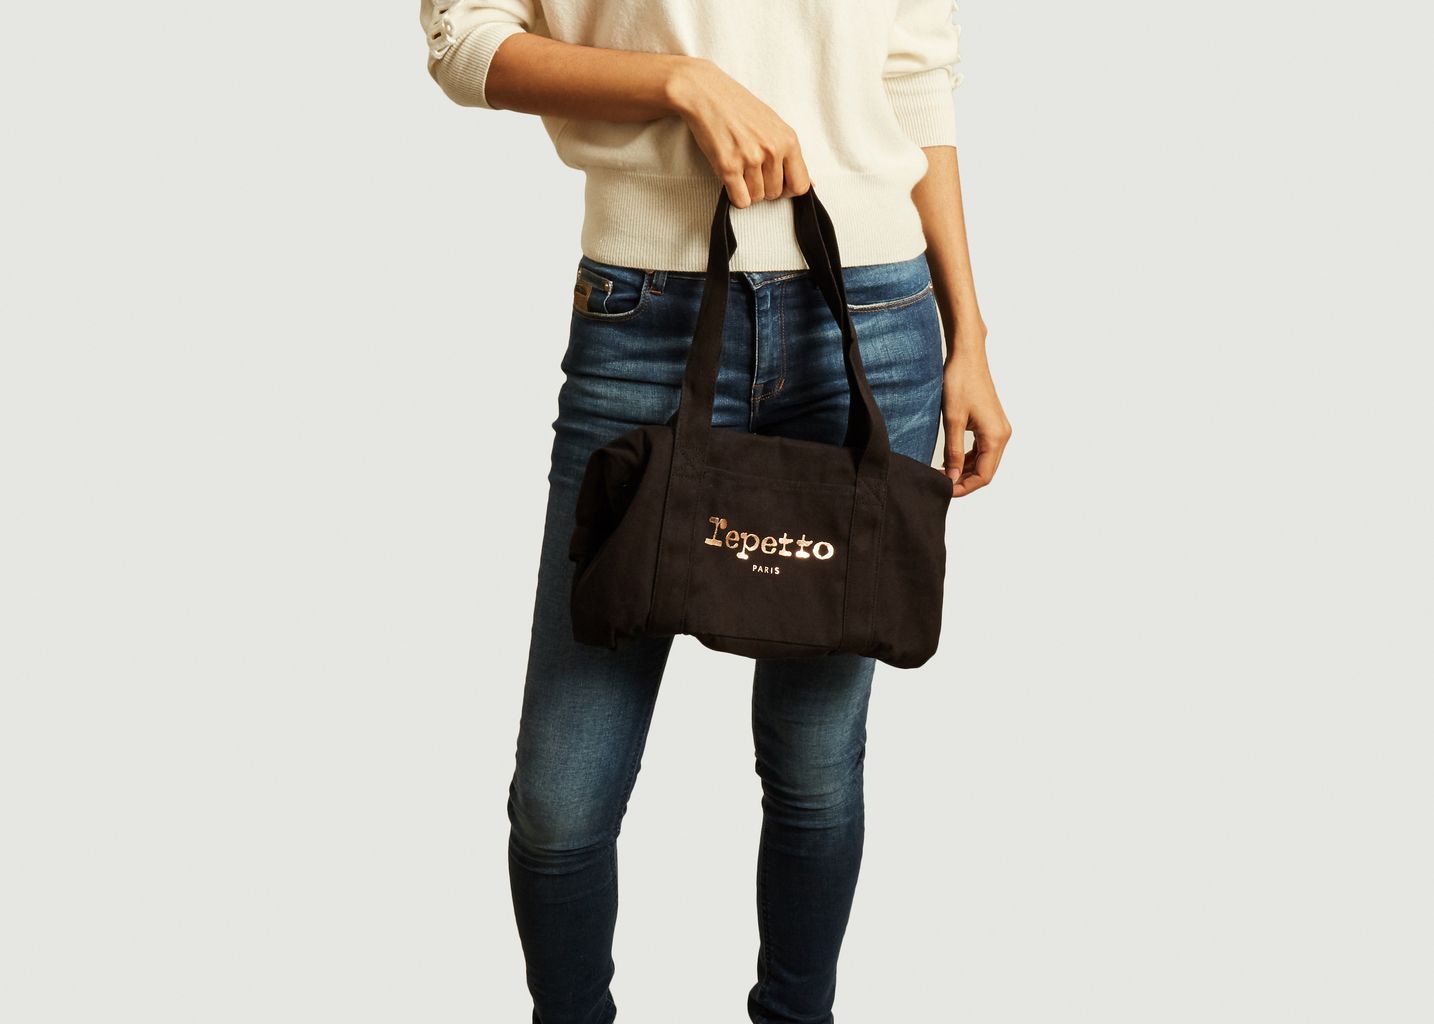 Medium size cotton duffel bag - Repetto